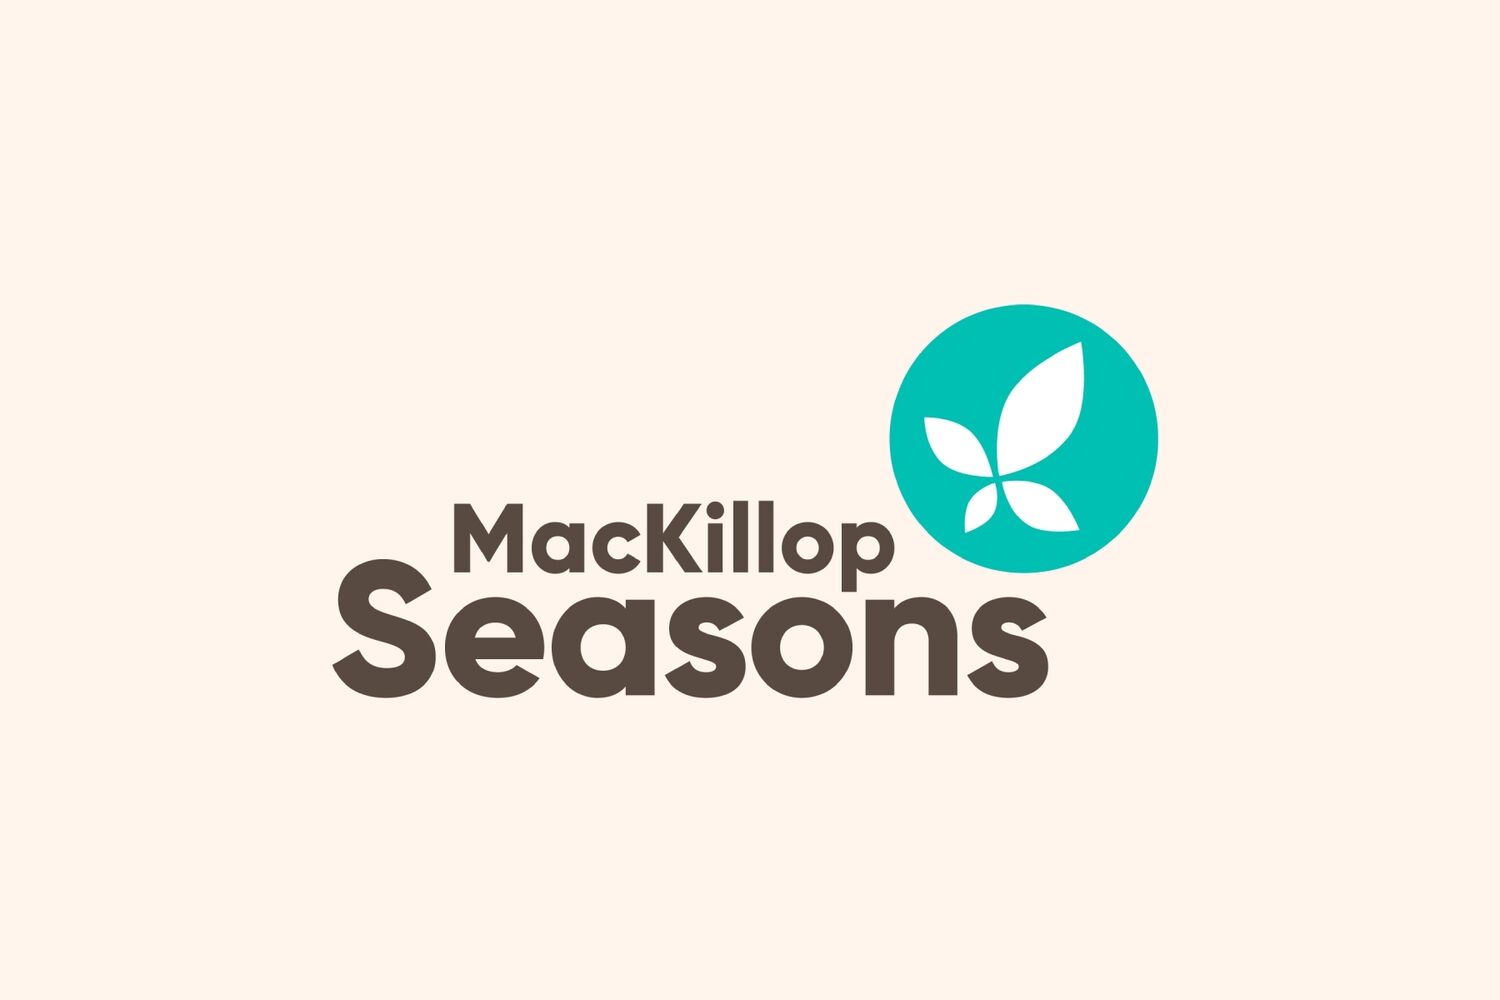 Mackillop seasons logo